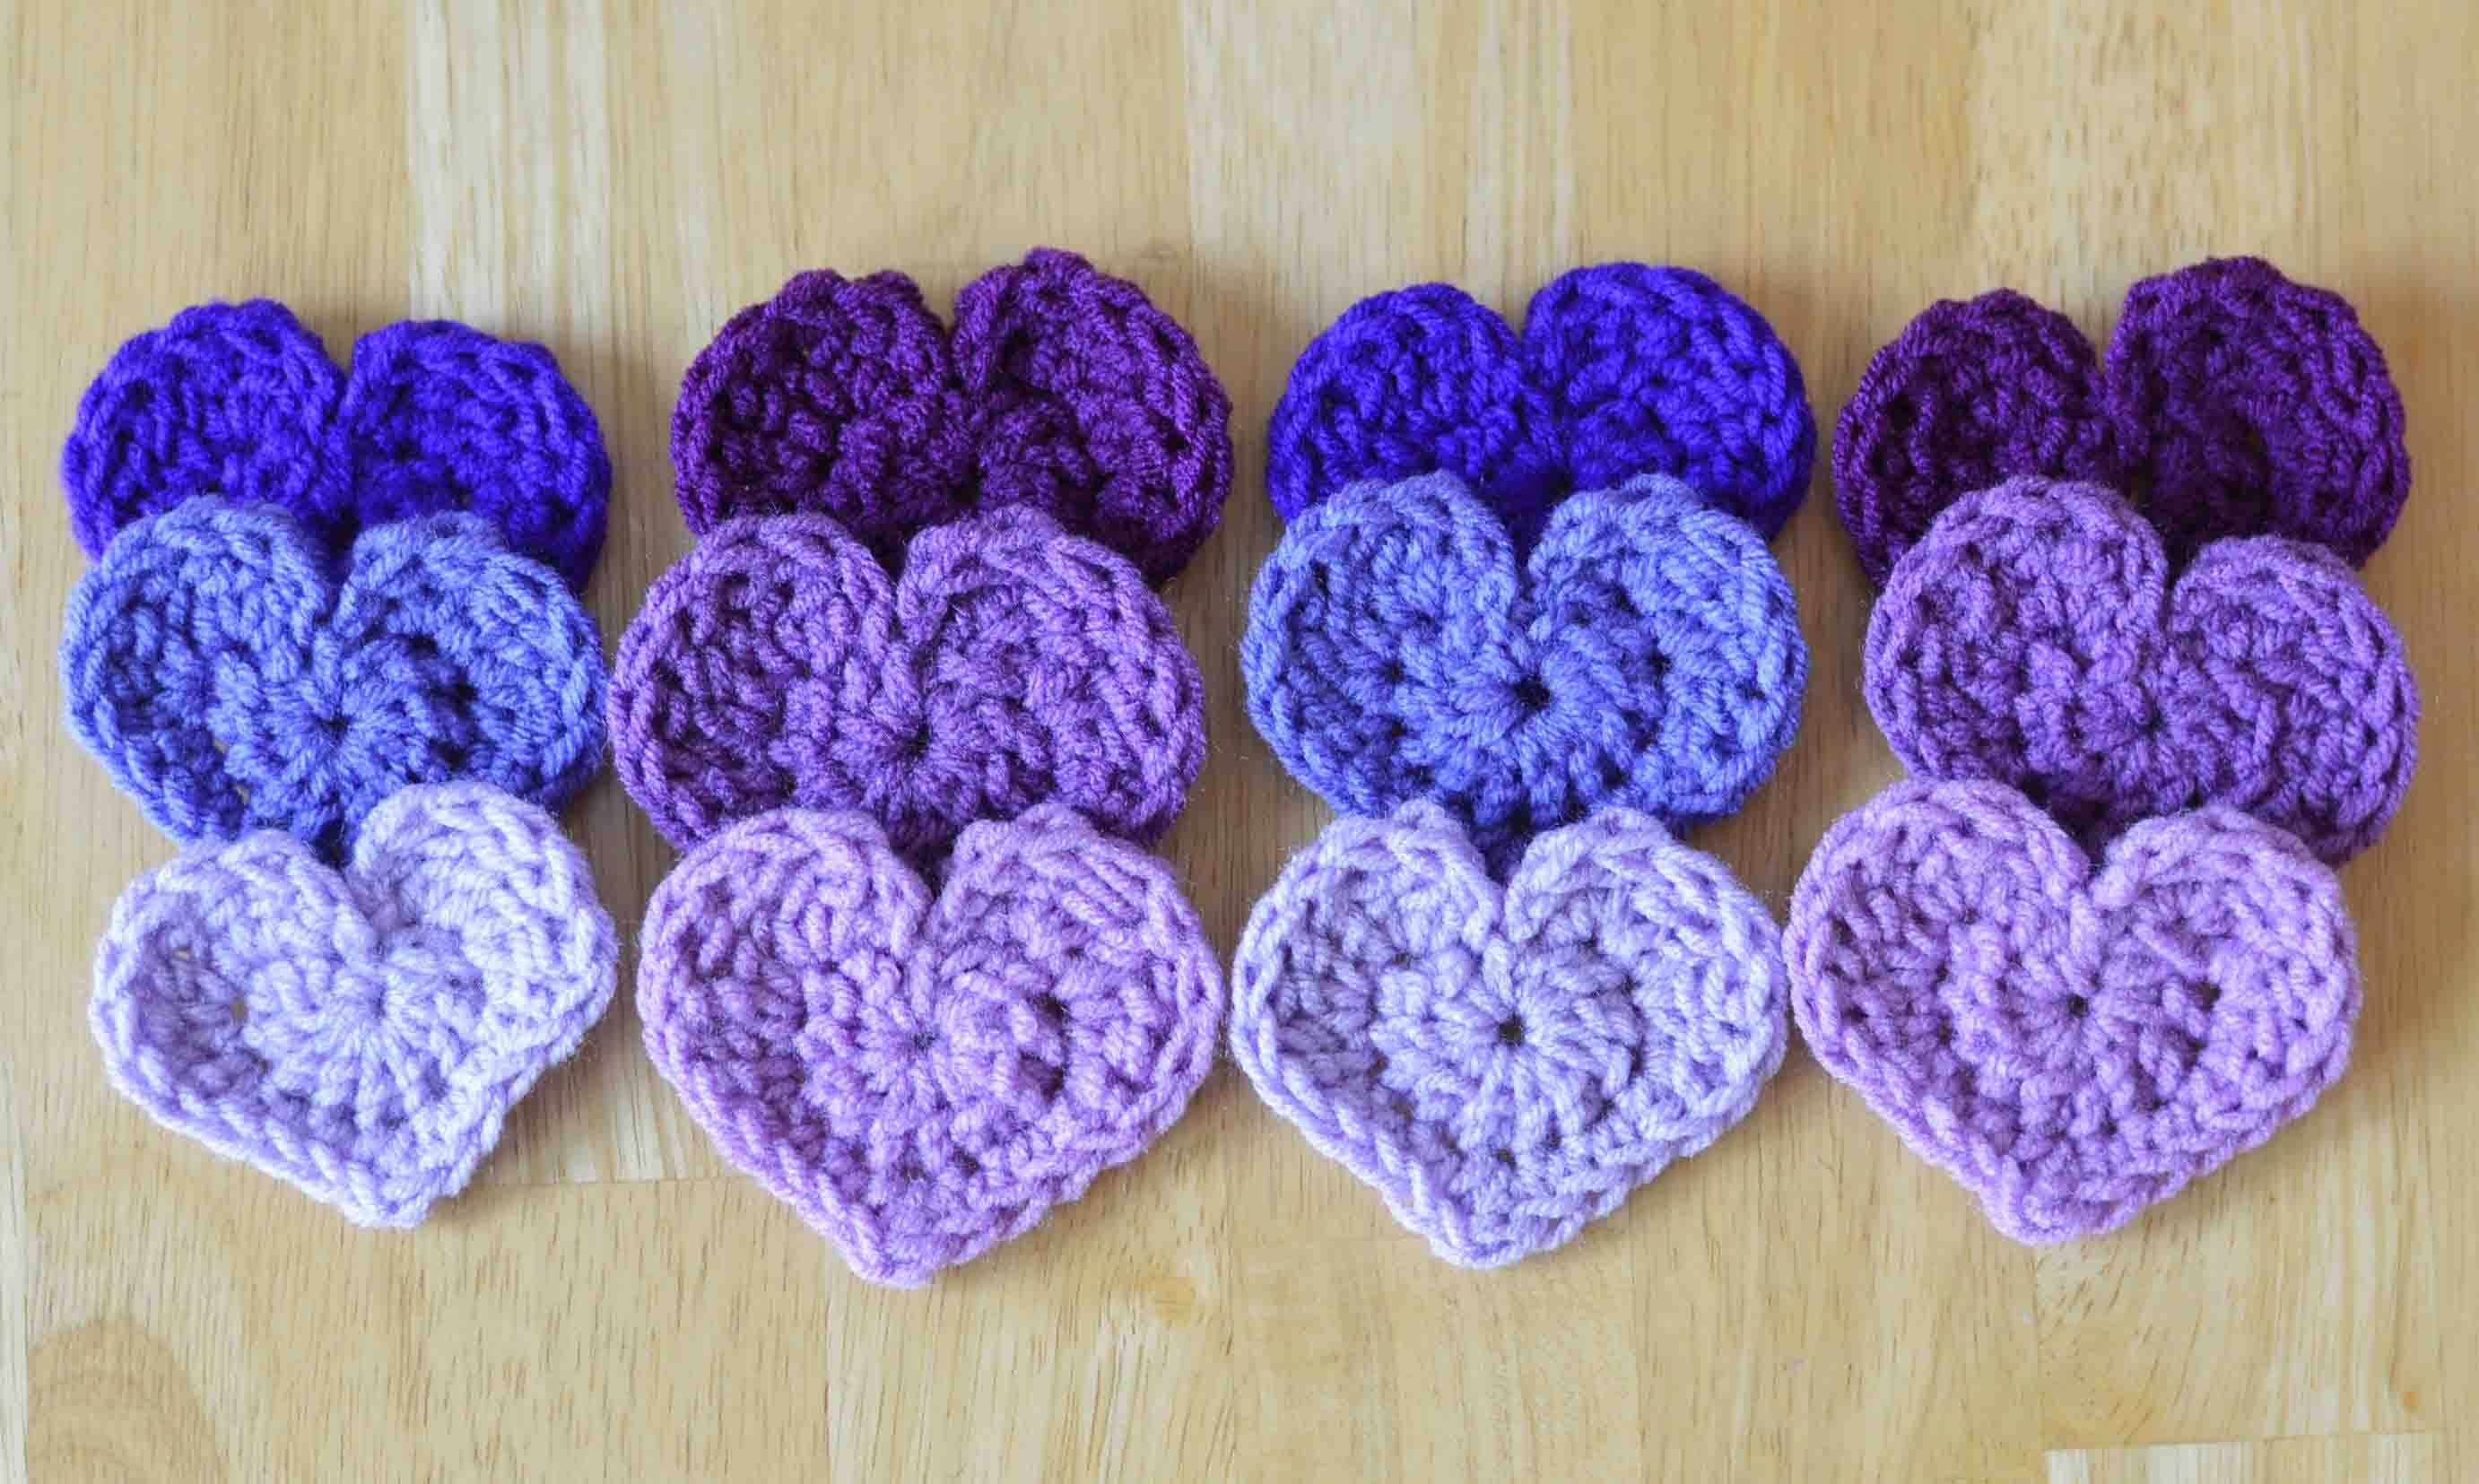 Crochet Heart Pattern The Easiest Heart Crochet Pattern Ever